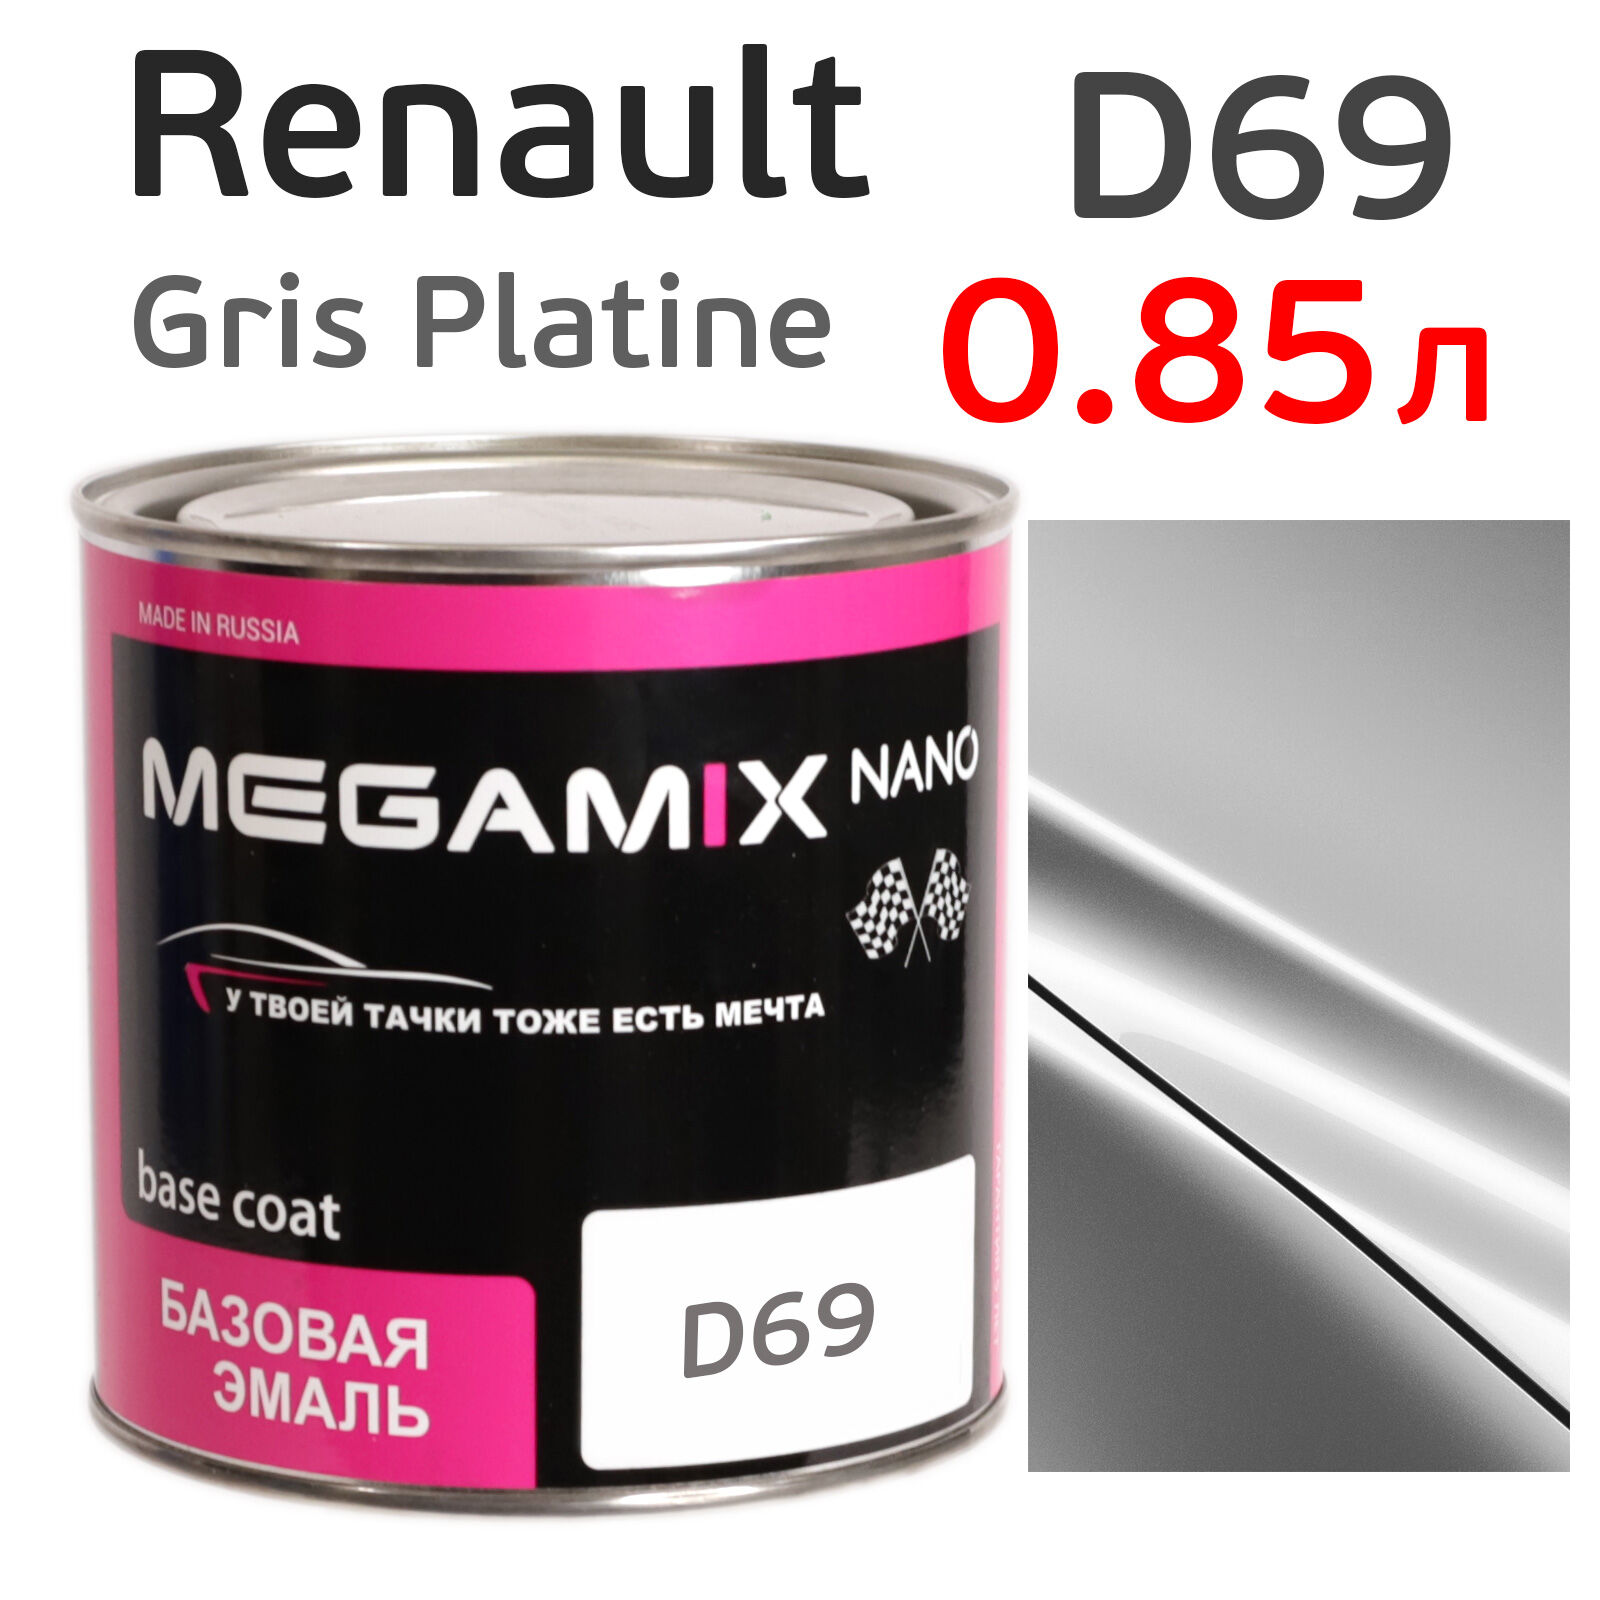 Автоэмаль MegaMIX (0.85л) Renault D69 Gris Platine, металлик, базисная эмаль под лак